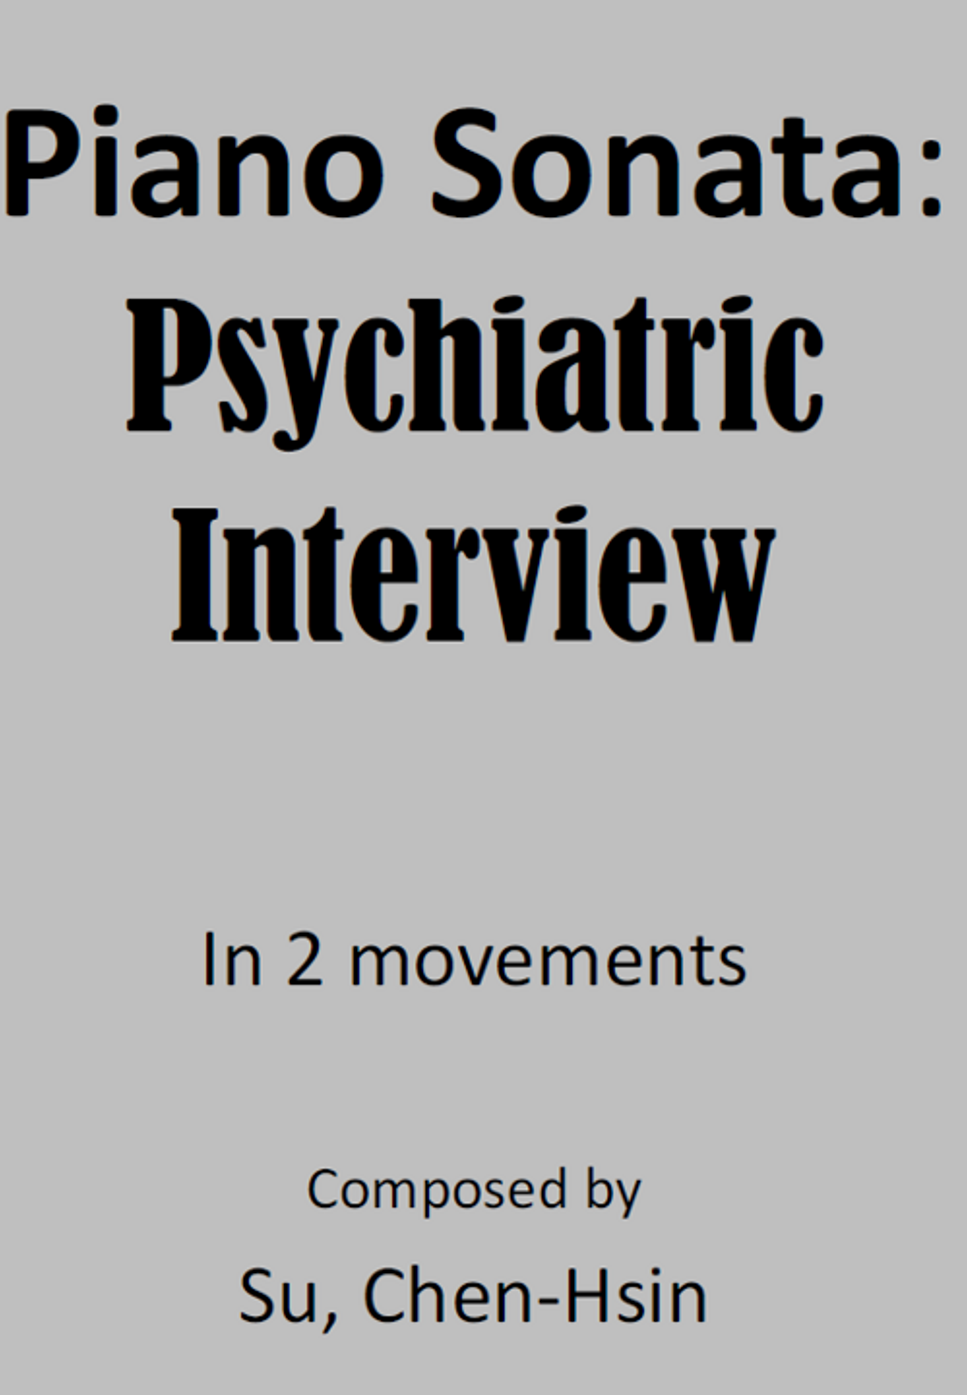 Su, Chen-Hsin - Piano Sonata: Psychiatric Interview (2 movements)